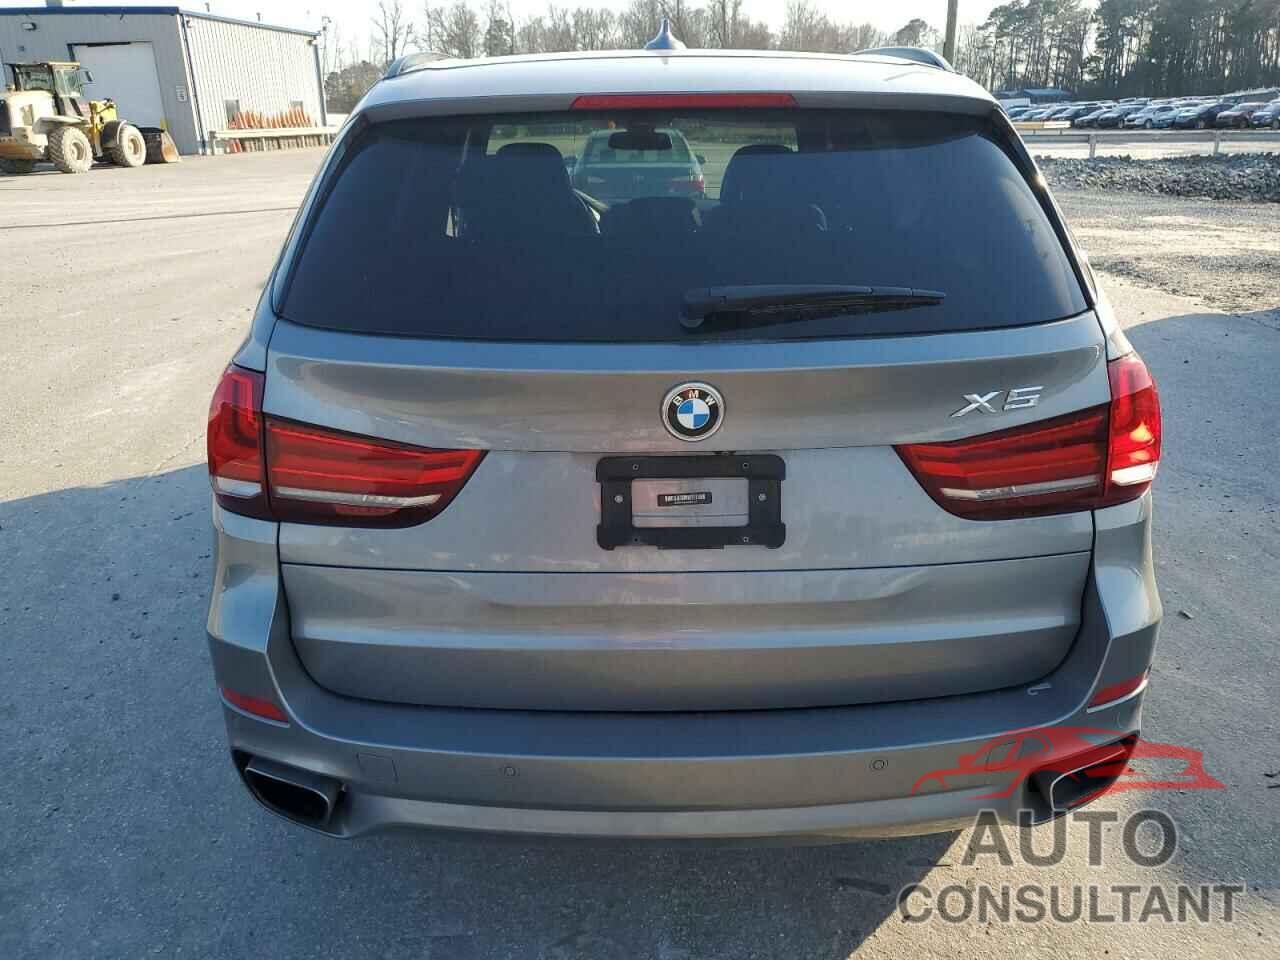 BMW X5 2018 - 5UXKR0C54J0X84723